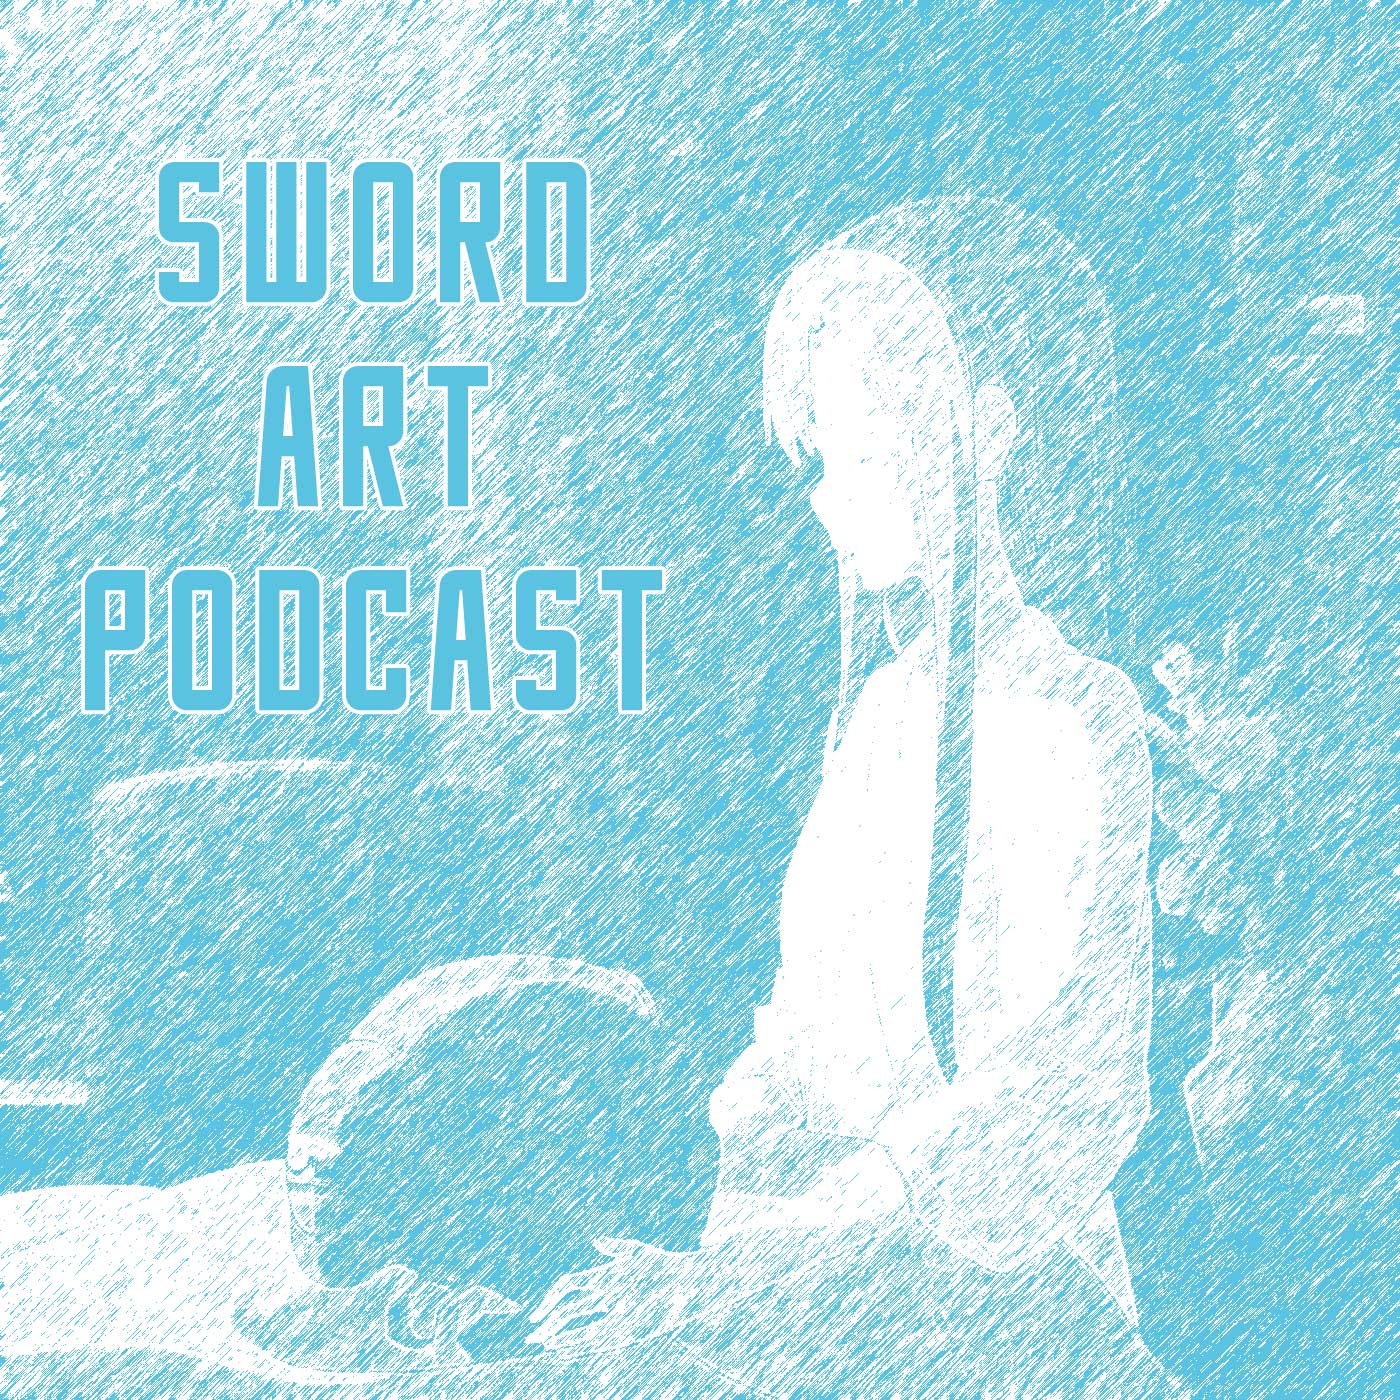 Sword Art Podcast - Season 3 - Epsiode 1